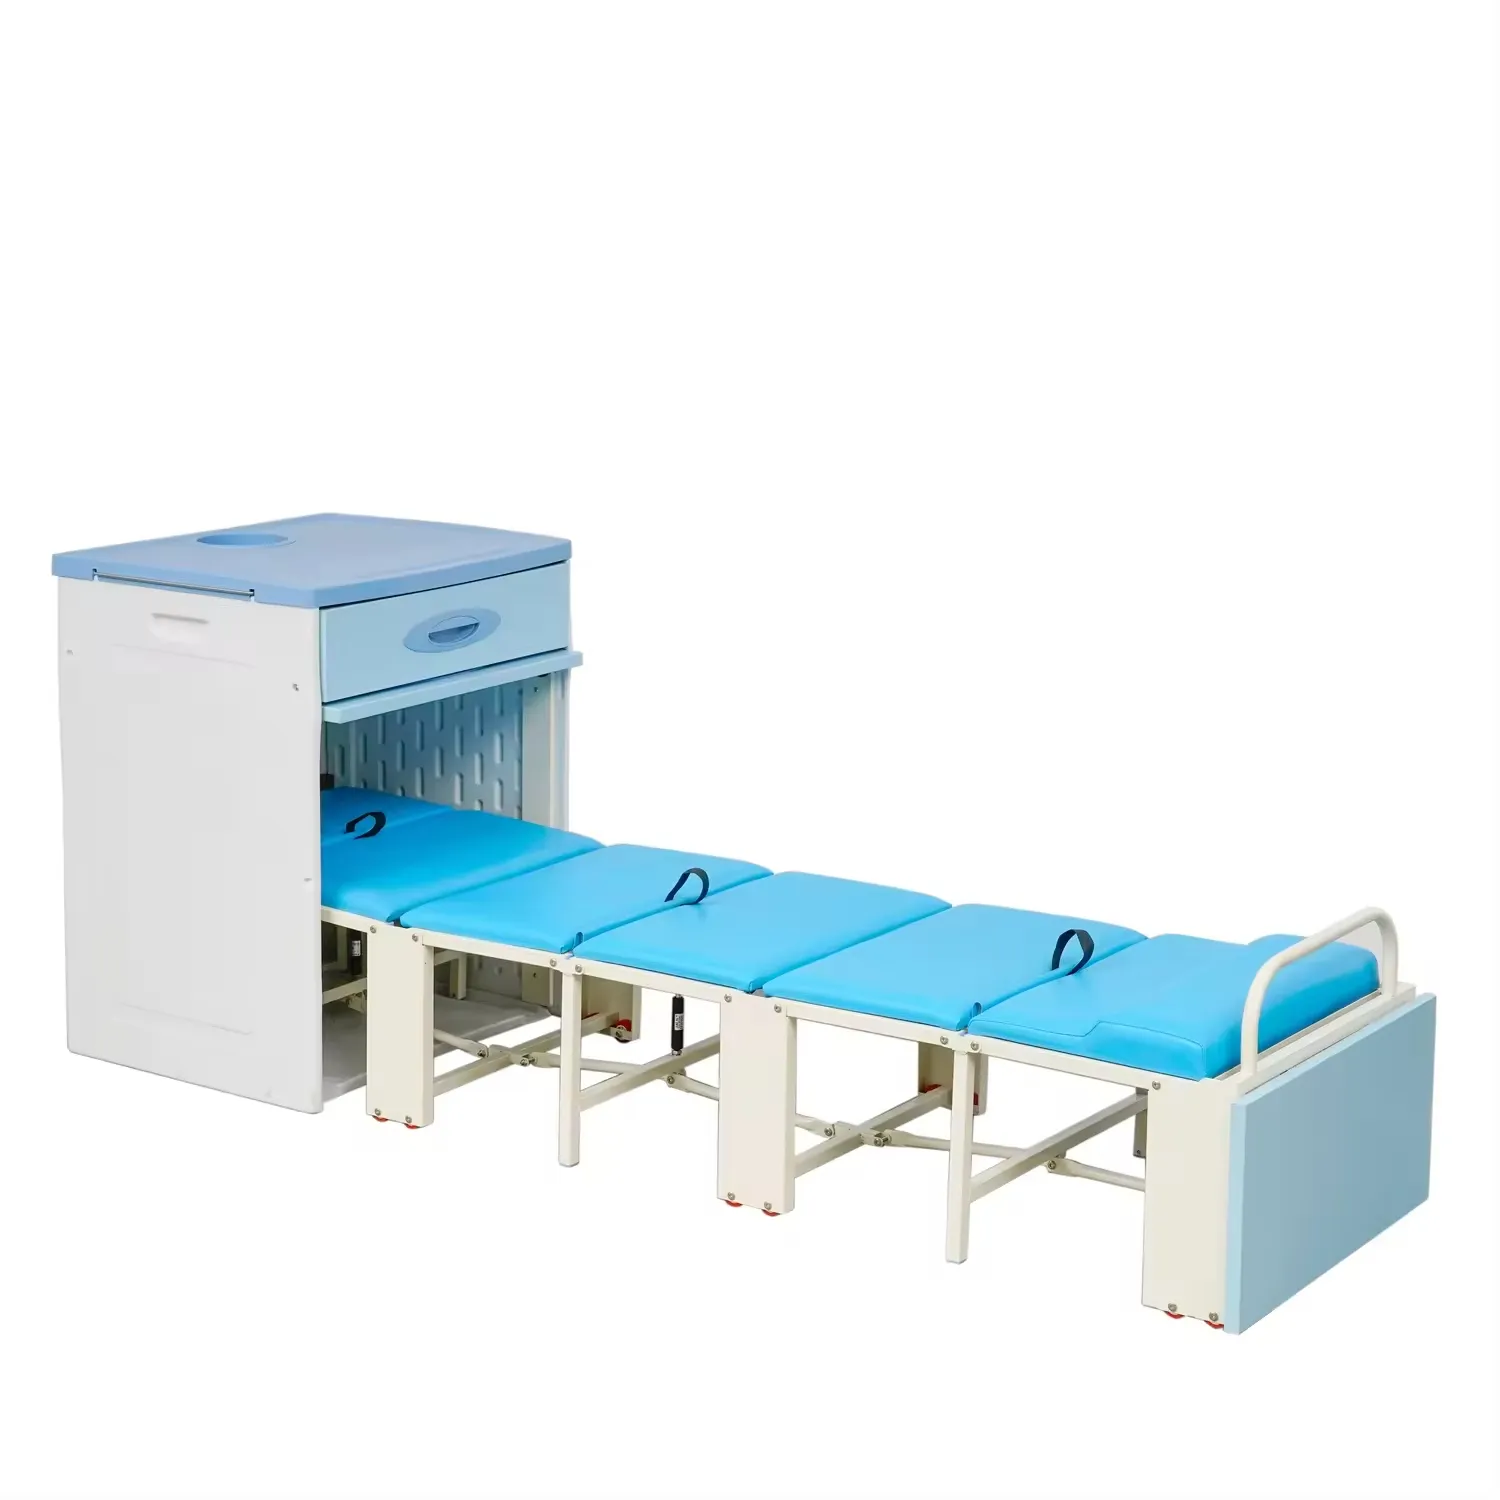 Больничная мебель многофункциональное больничное кресло для пациента, складное больничное кресло и кровать